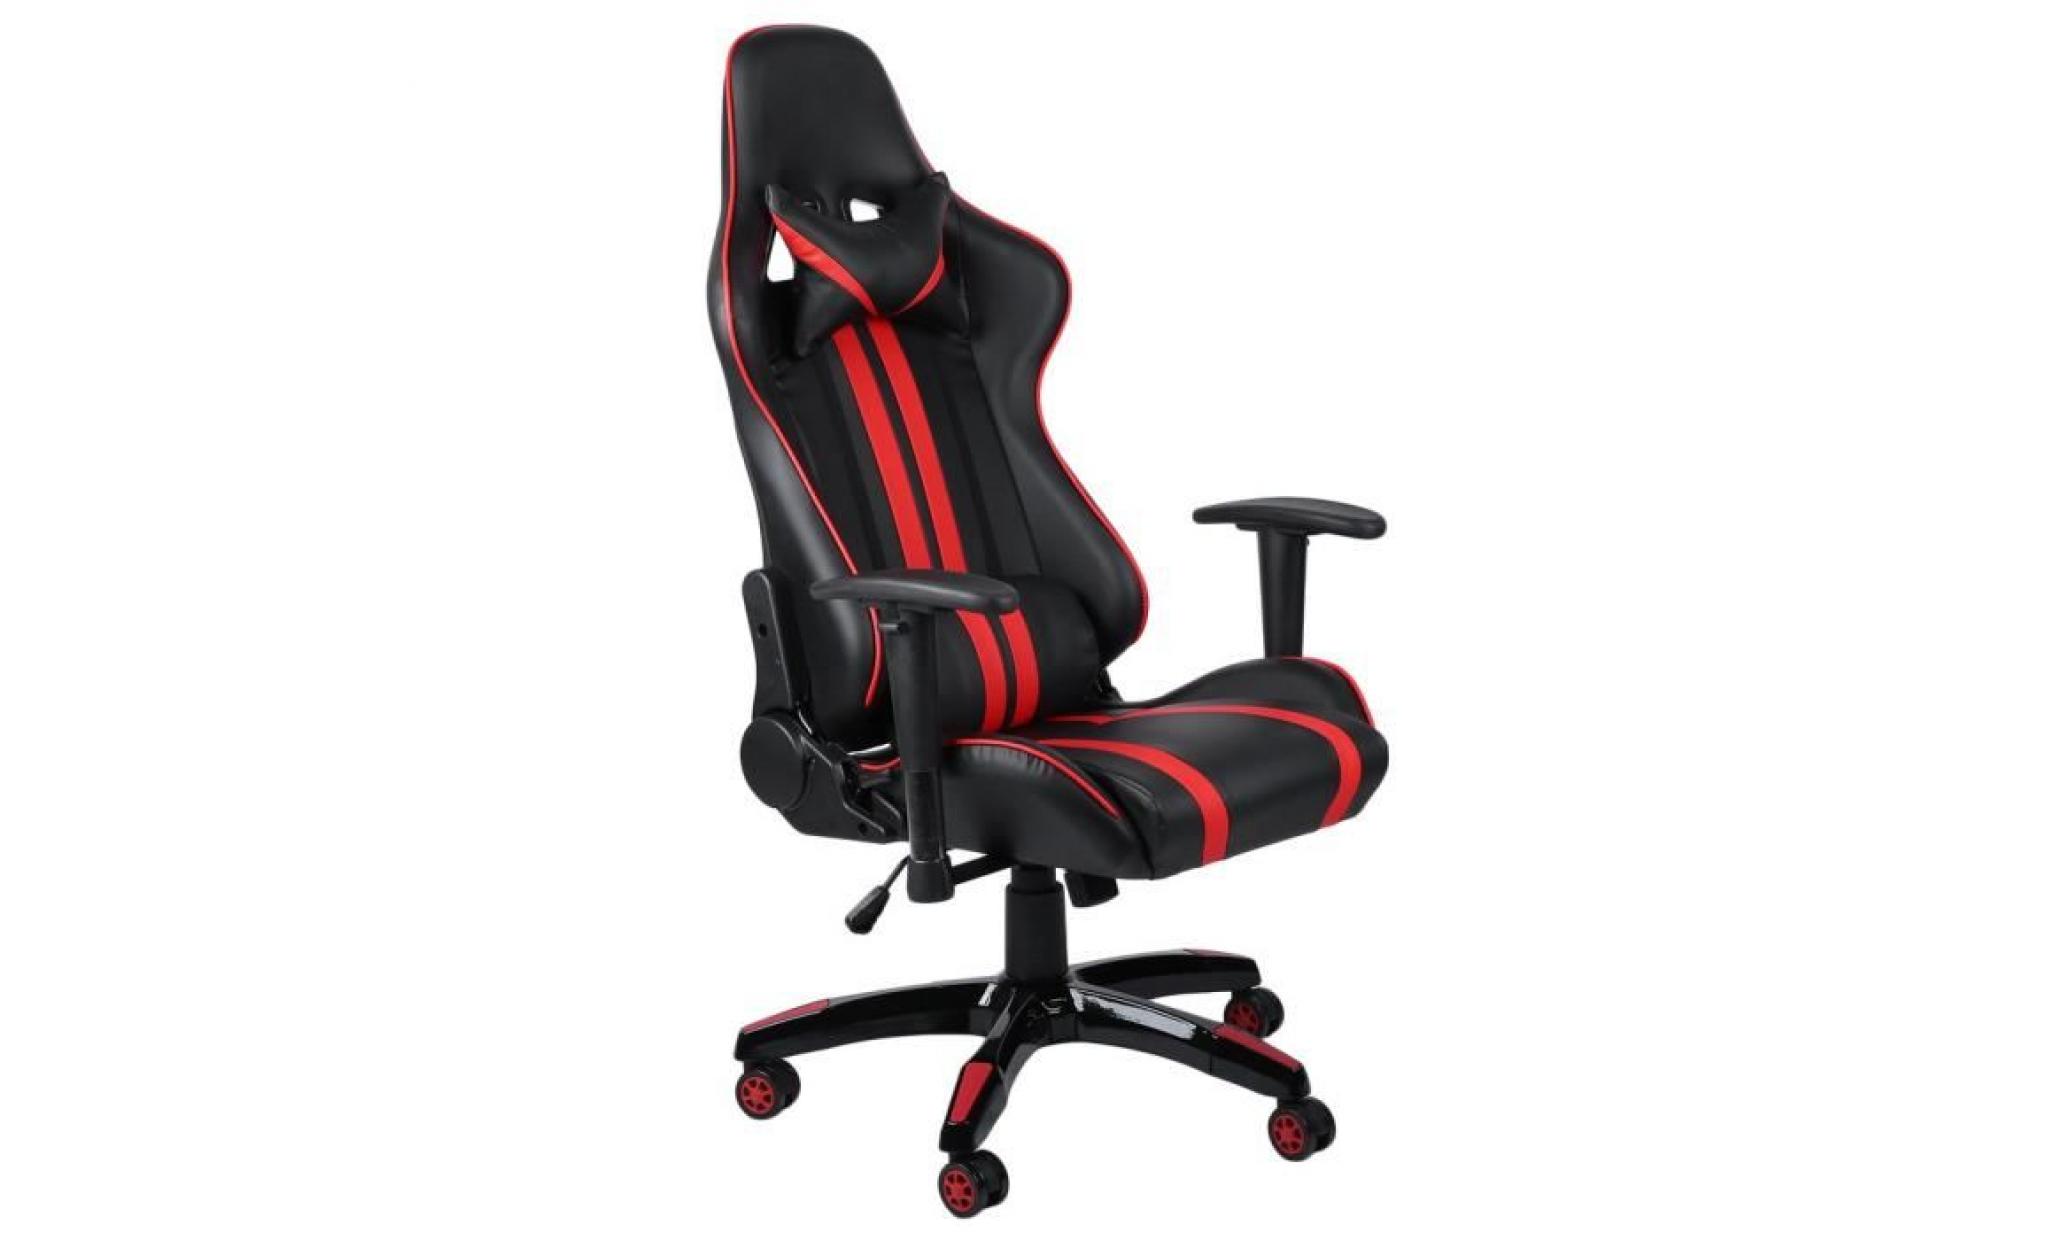 2018 nouveau comfortable fauteuil gamer chaise de jeu chaise racing ergonomique rouge et noir